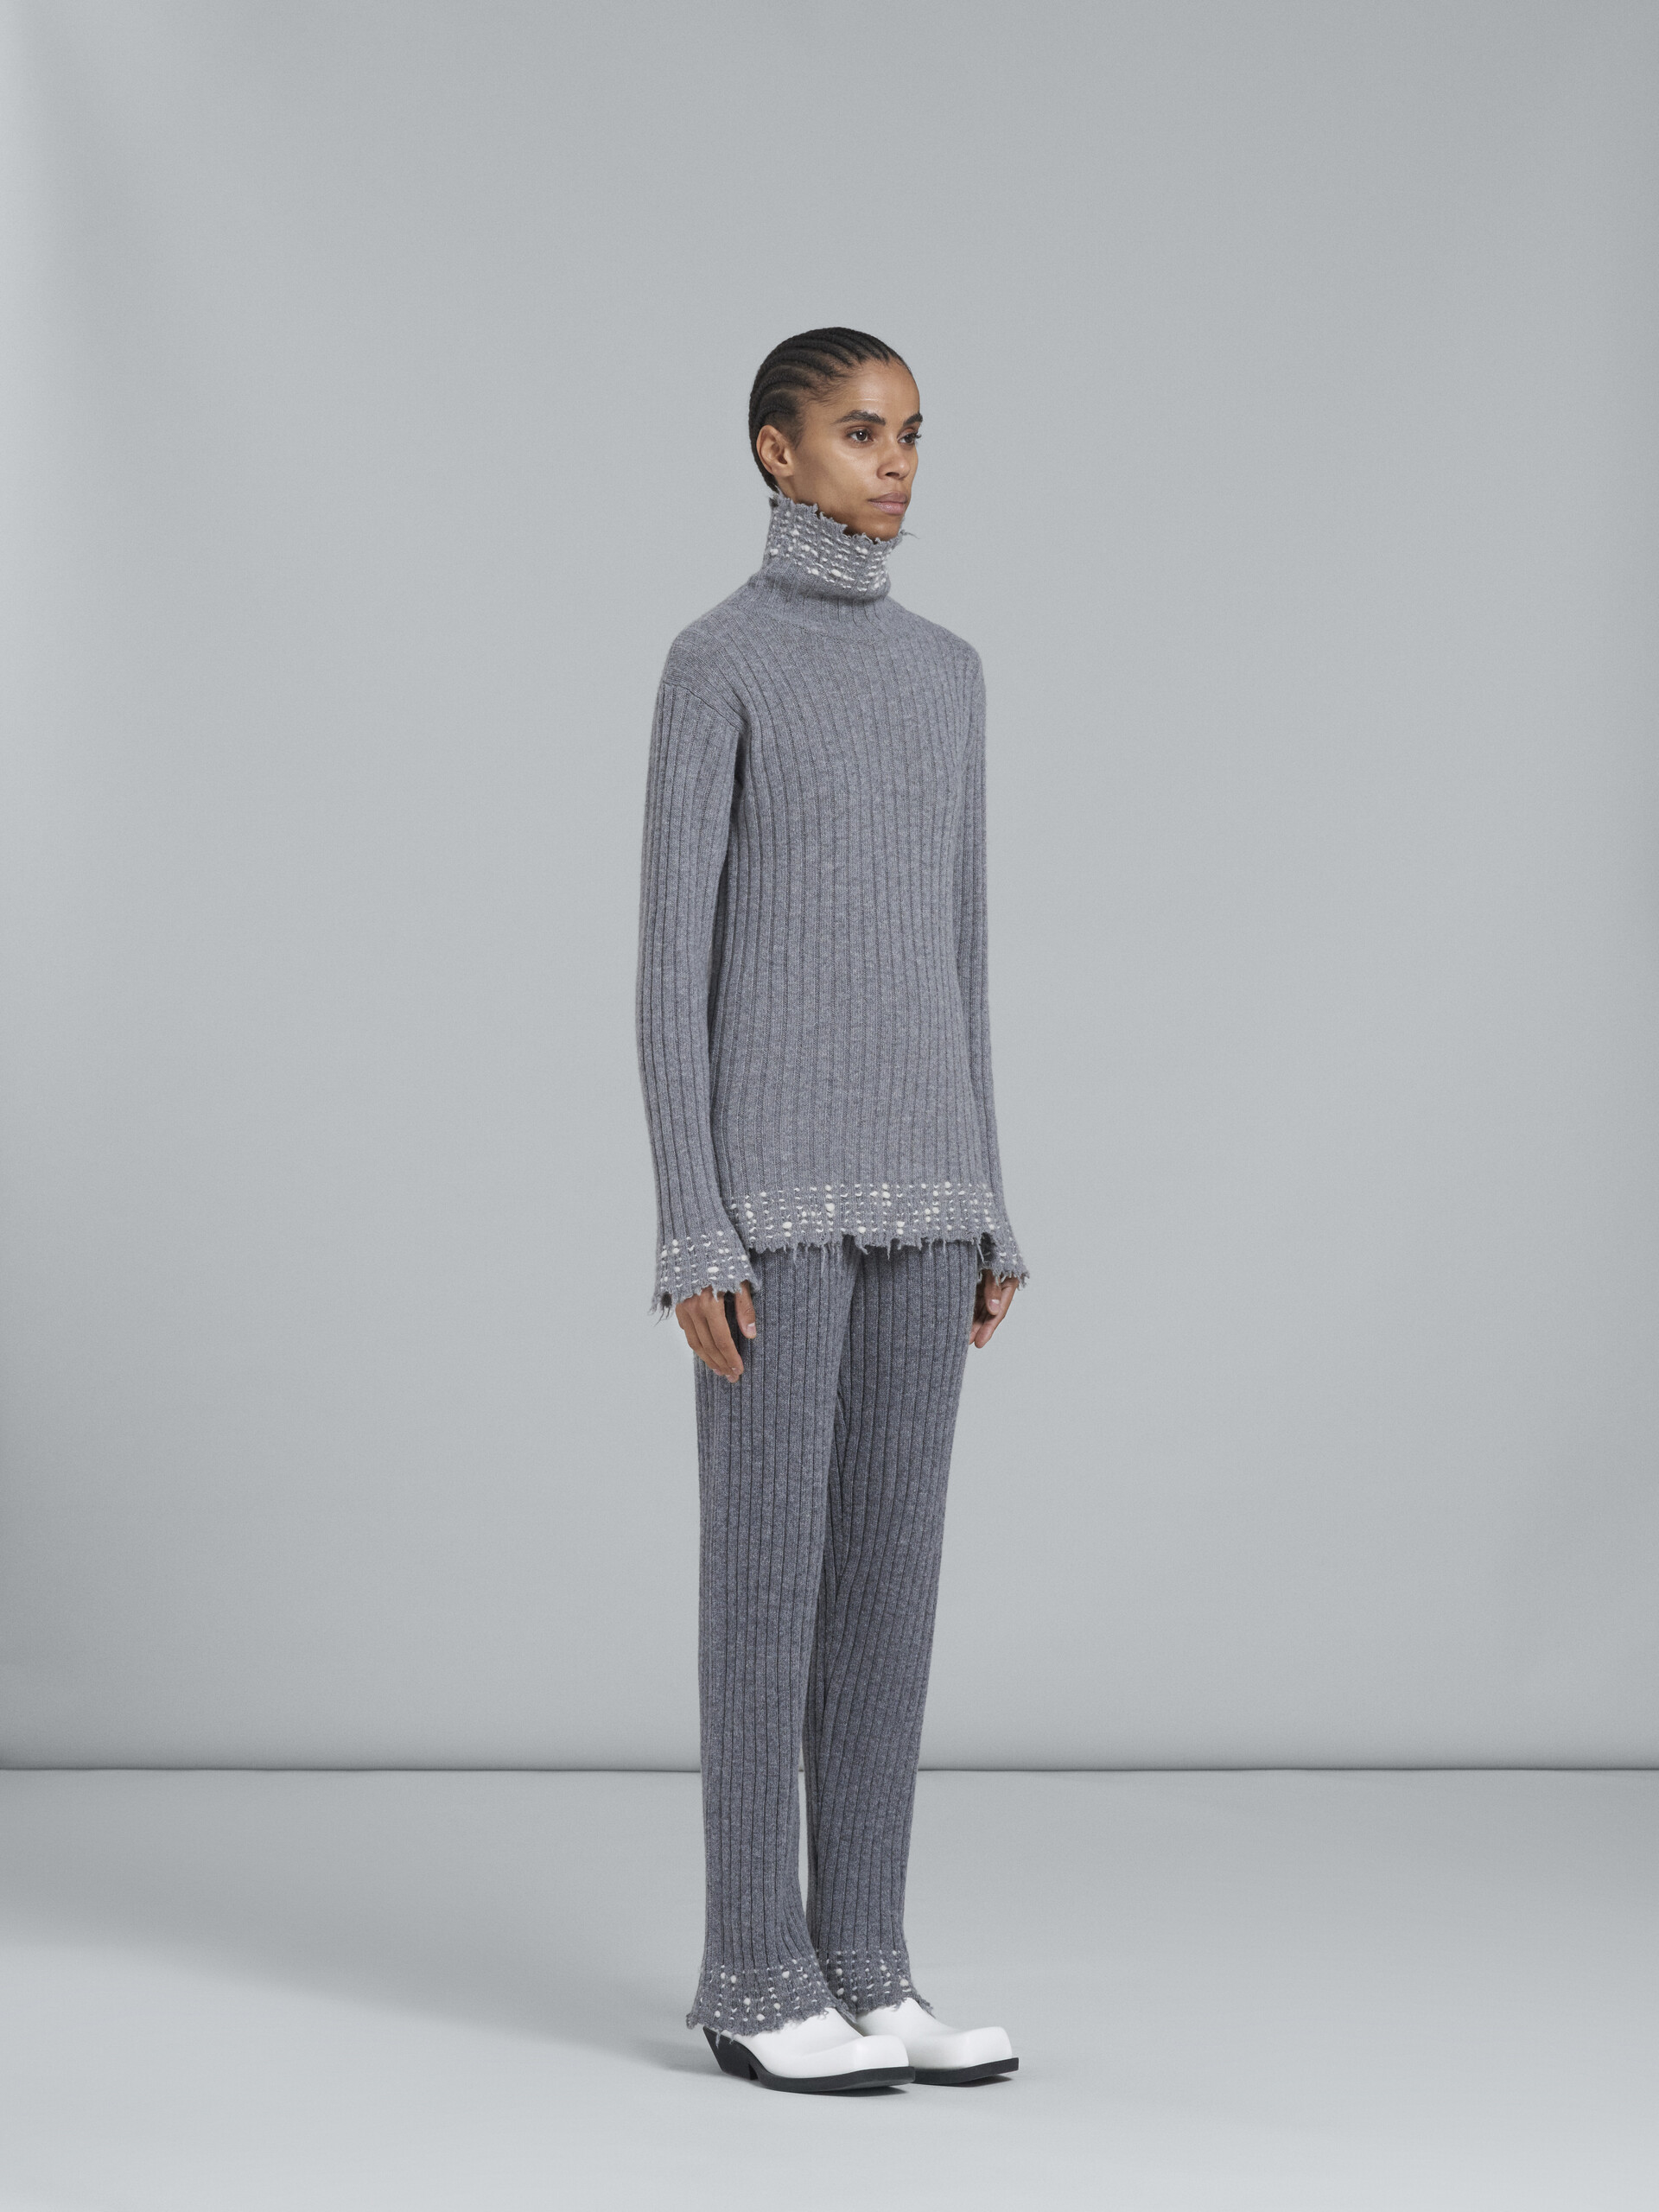 Grey knitted wool leggings - Pants - Image 5